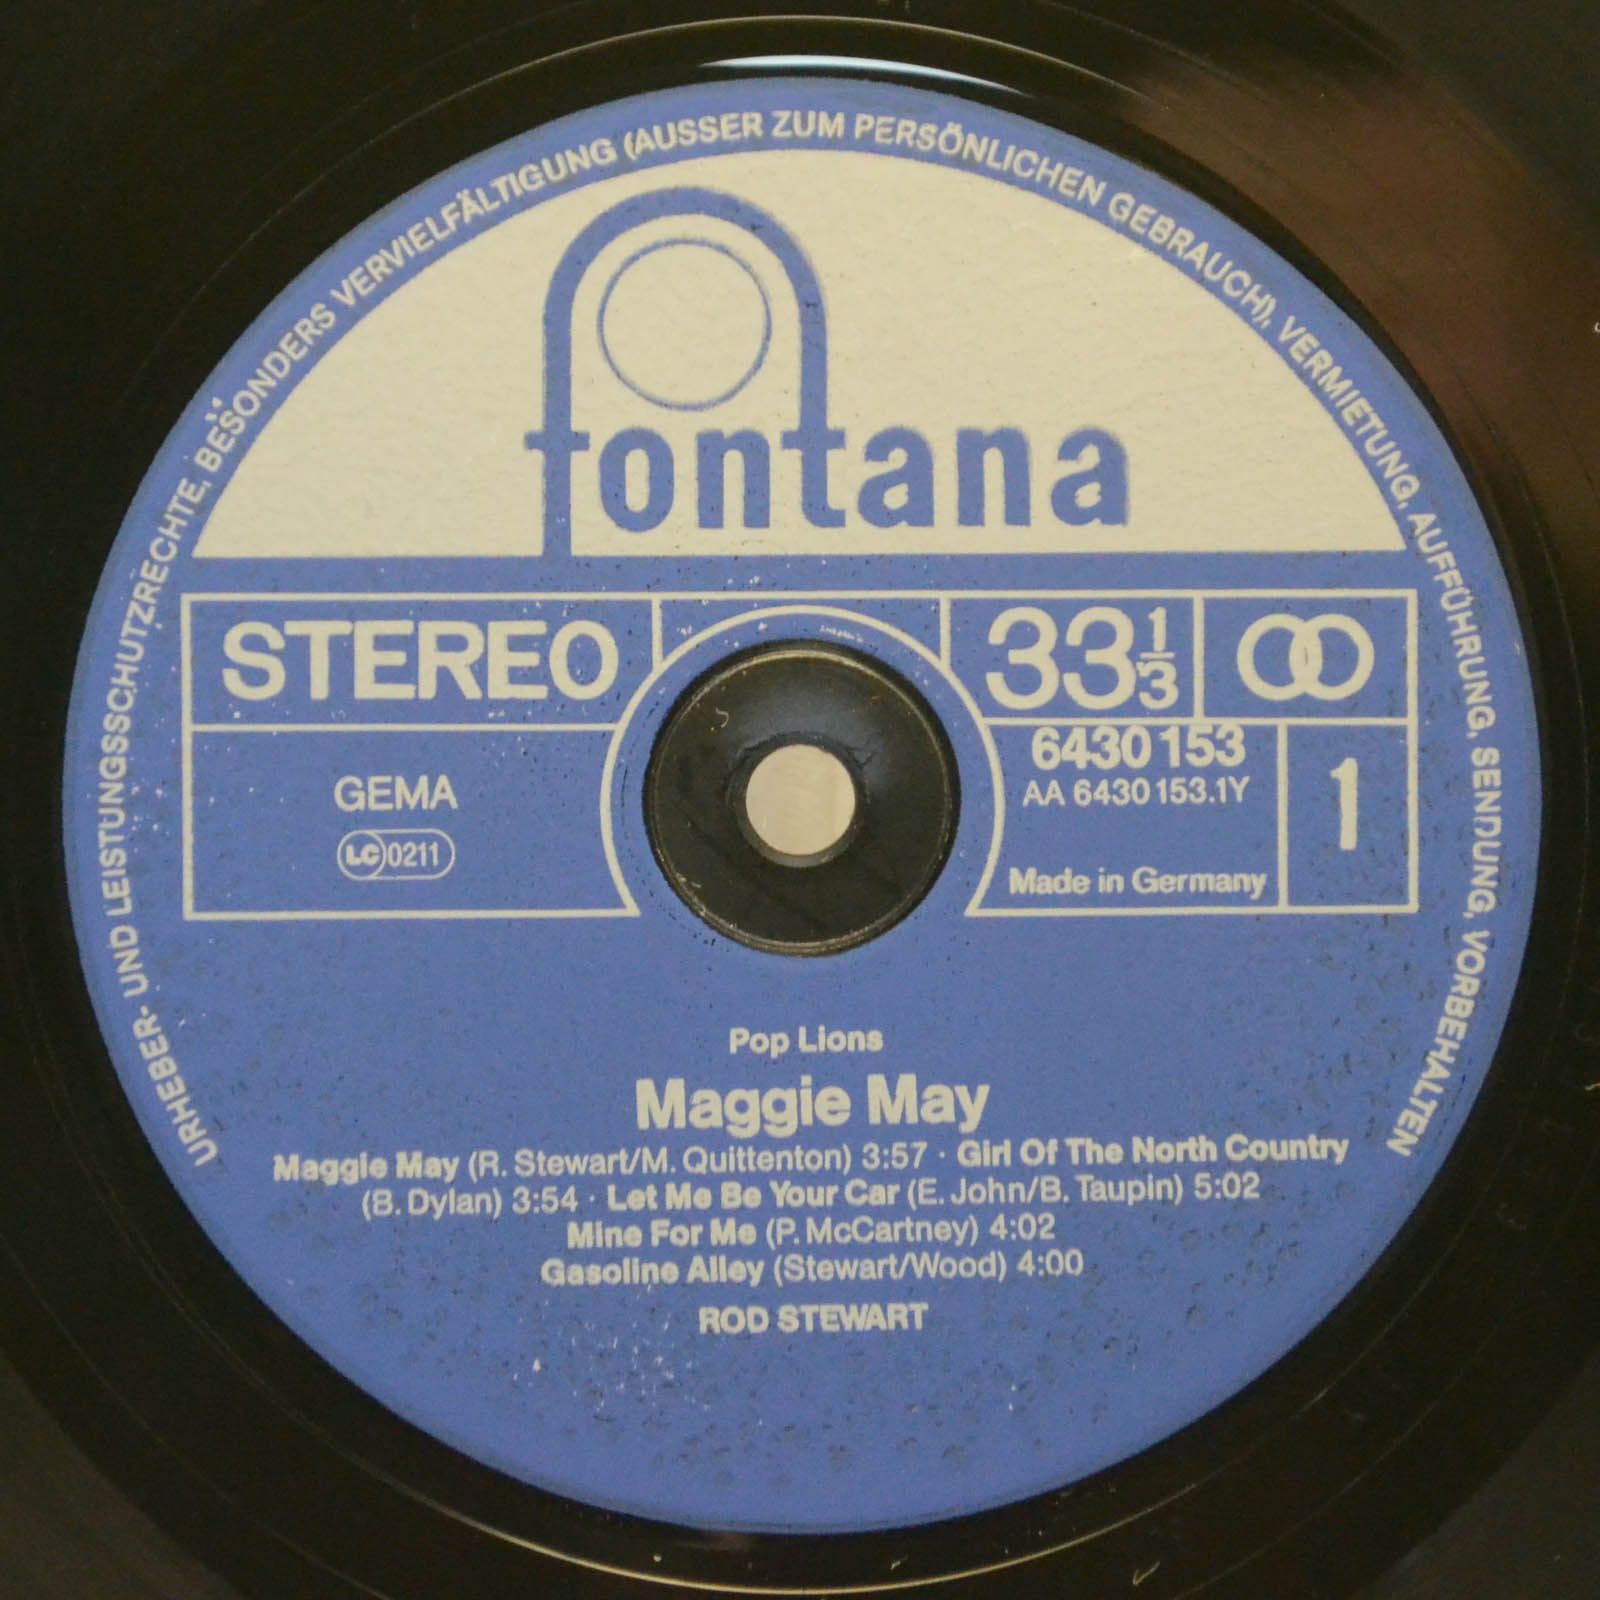 Rod Stewart — Maggie May, 1980